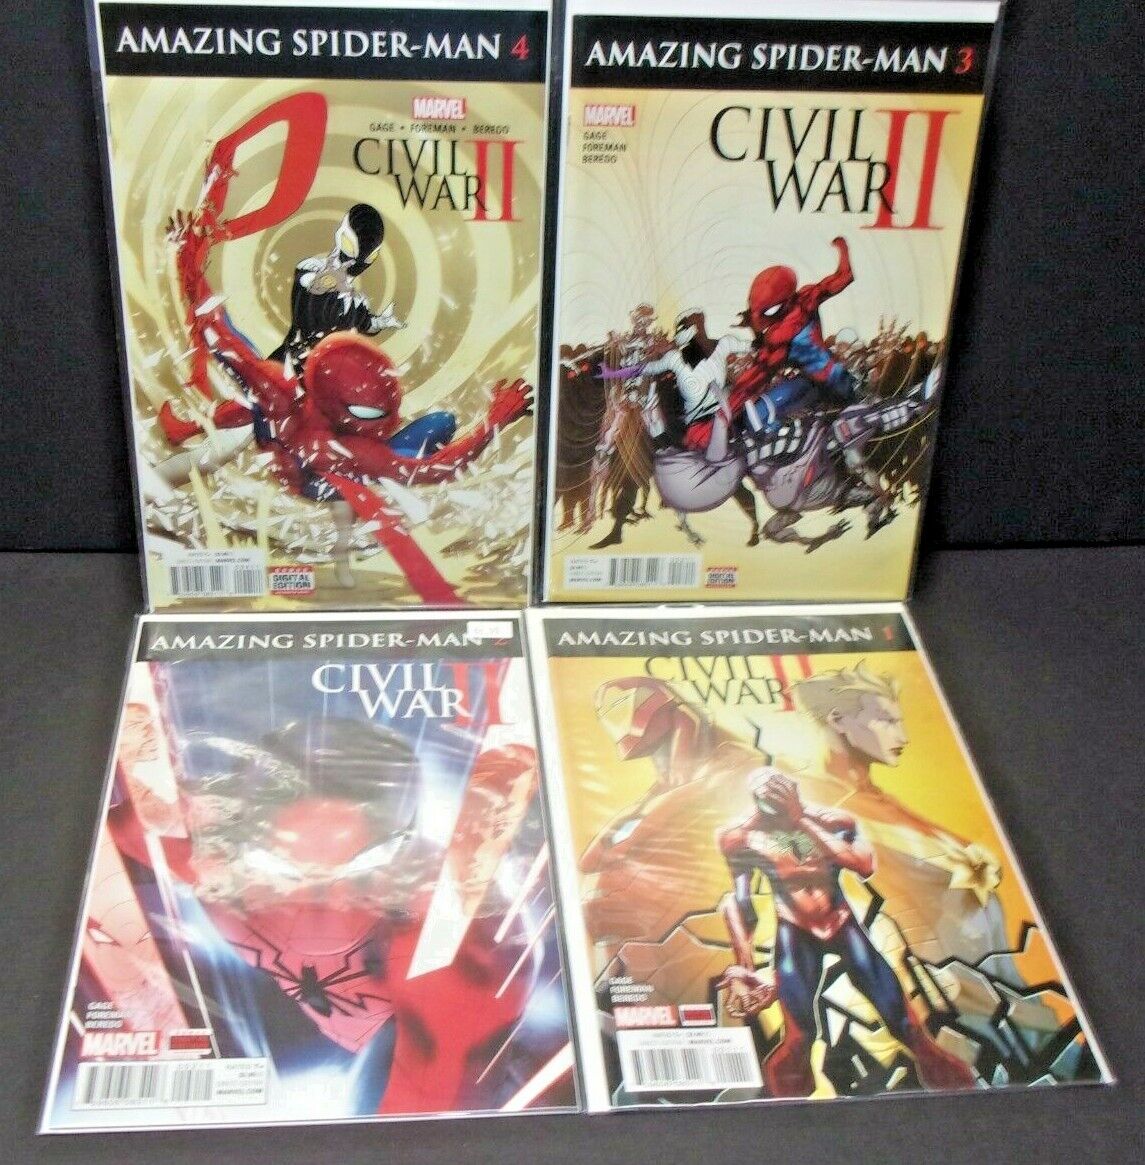 Marvel Comics AMAZING SPIDER MAN Lot Civil War II Series # 1-4 1 2 3 4 Run Lot